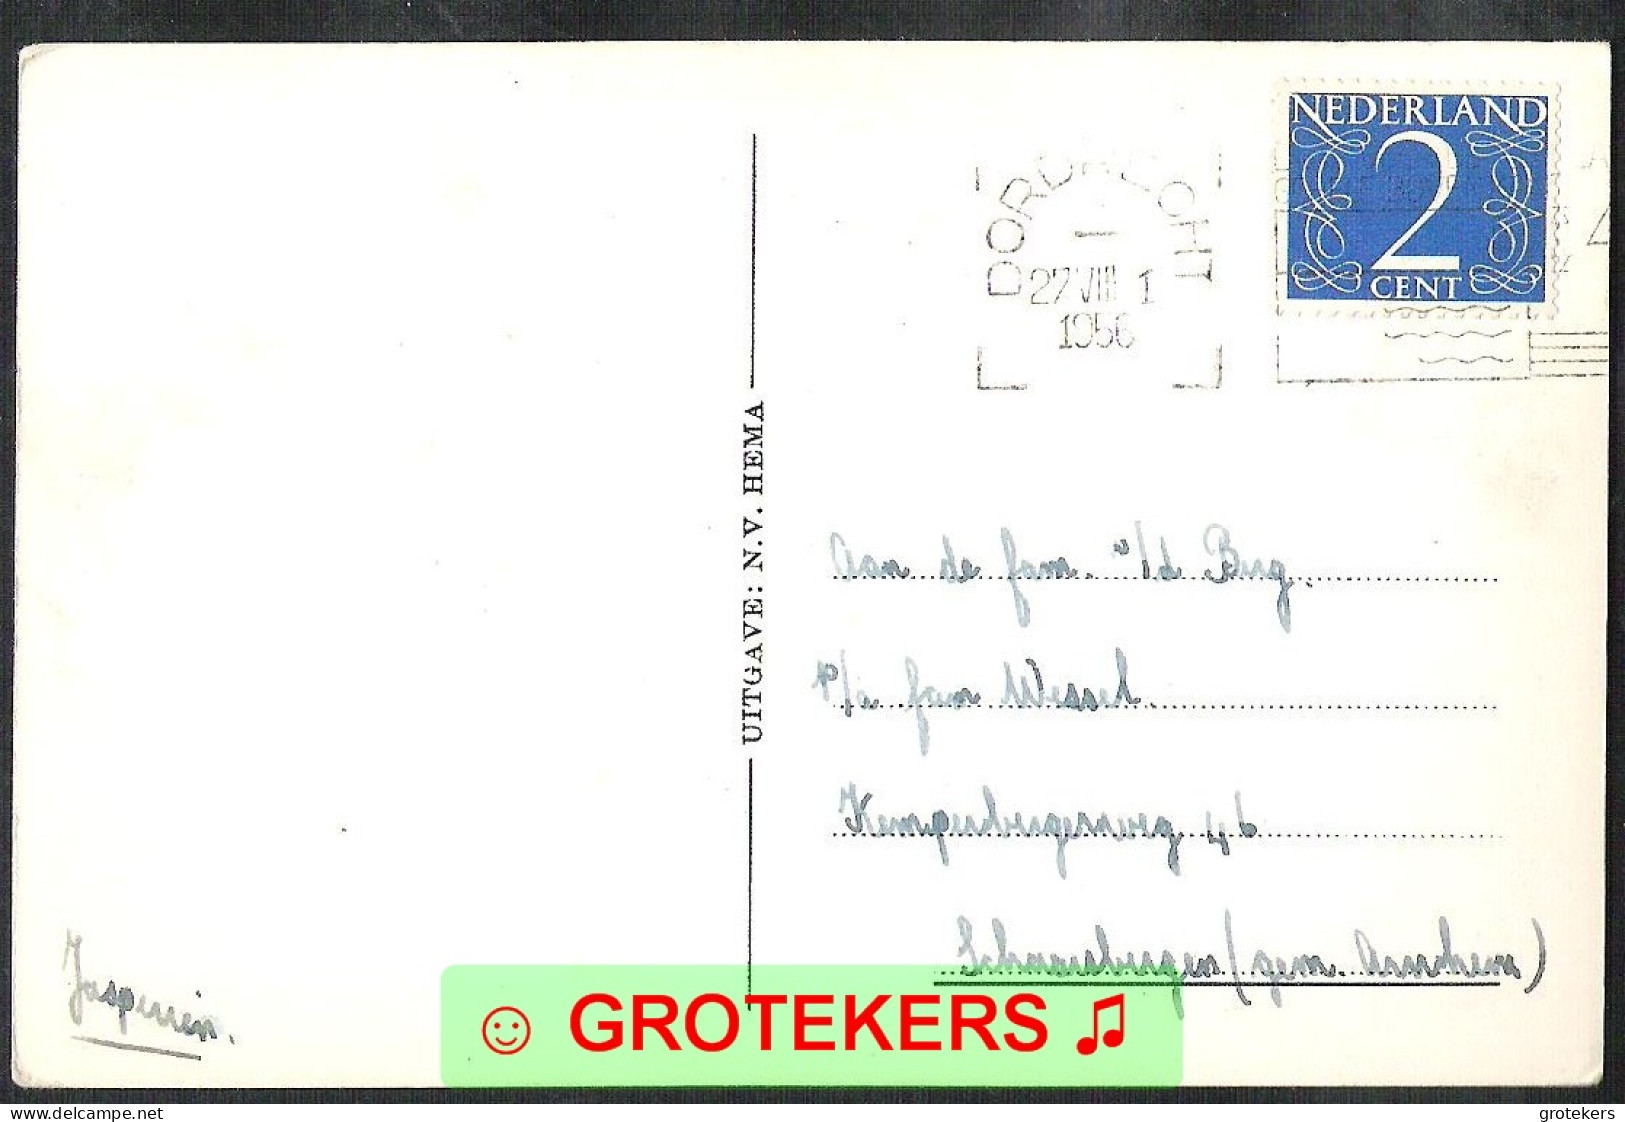 DORDRECHT Nieuwe Haven Met Groote Kerk 1956 - Dordrecht